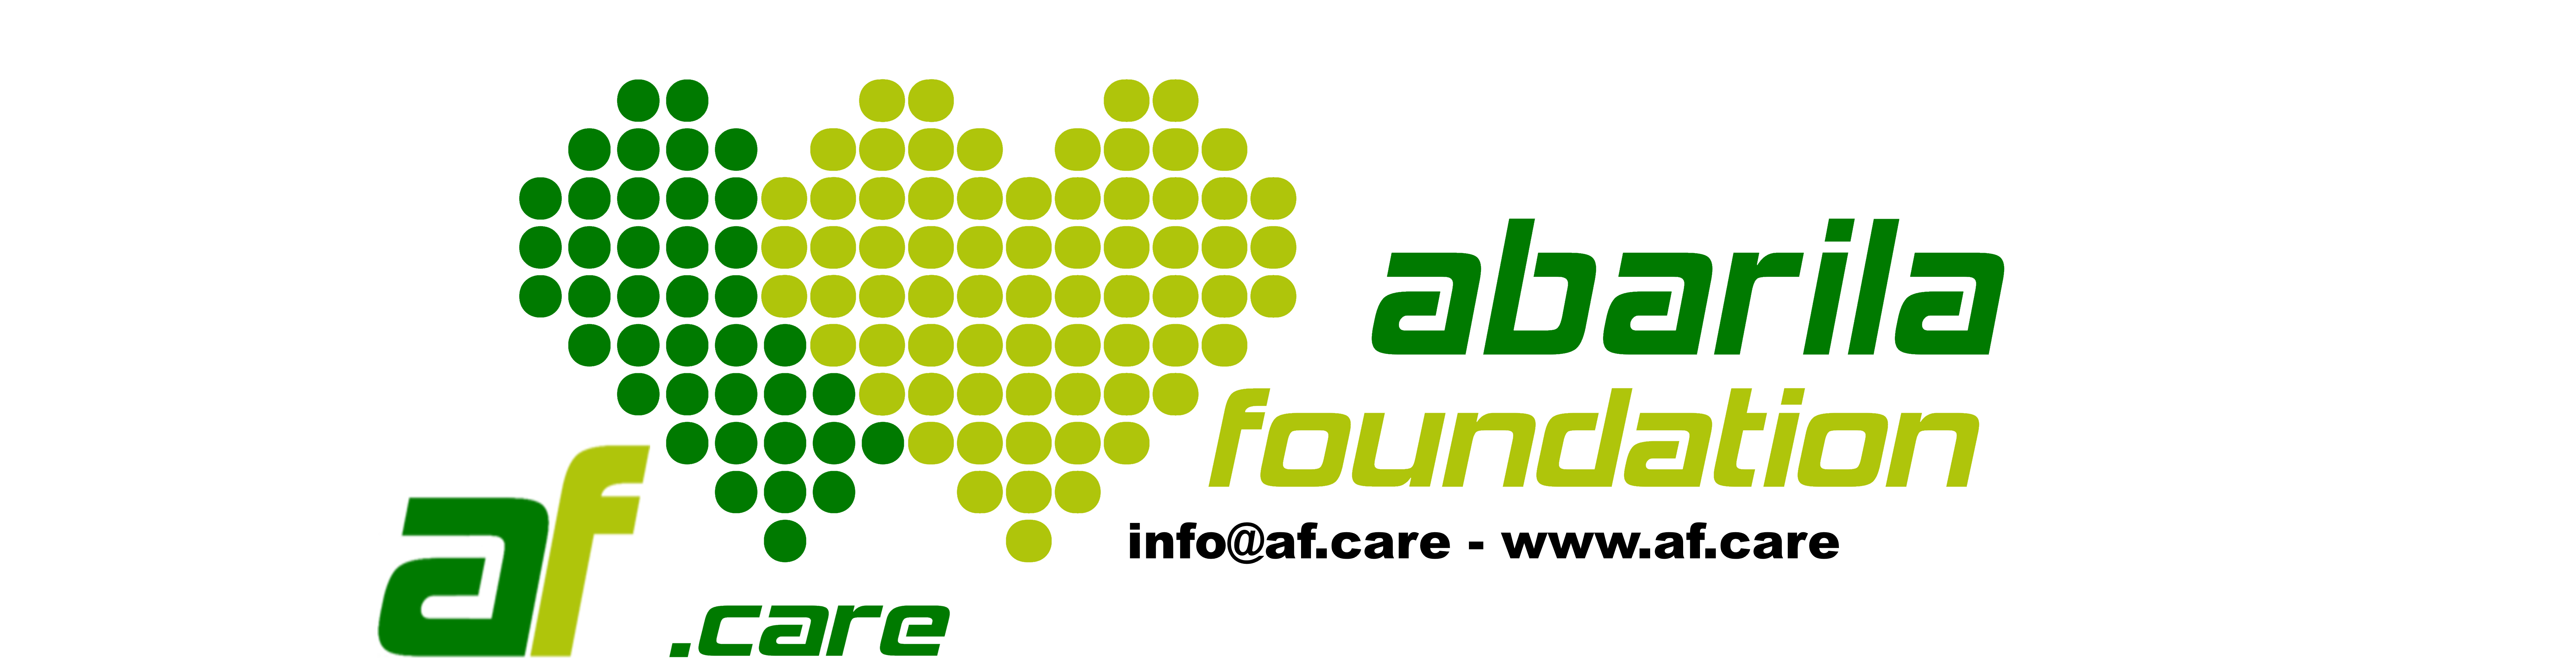 Abarila Foundation | 